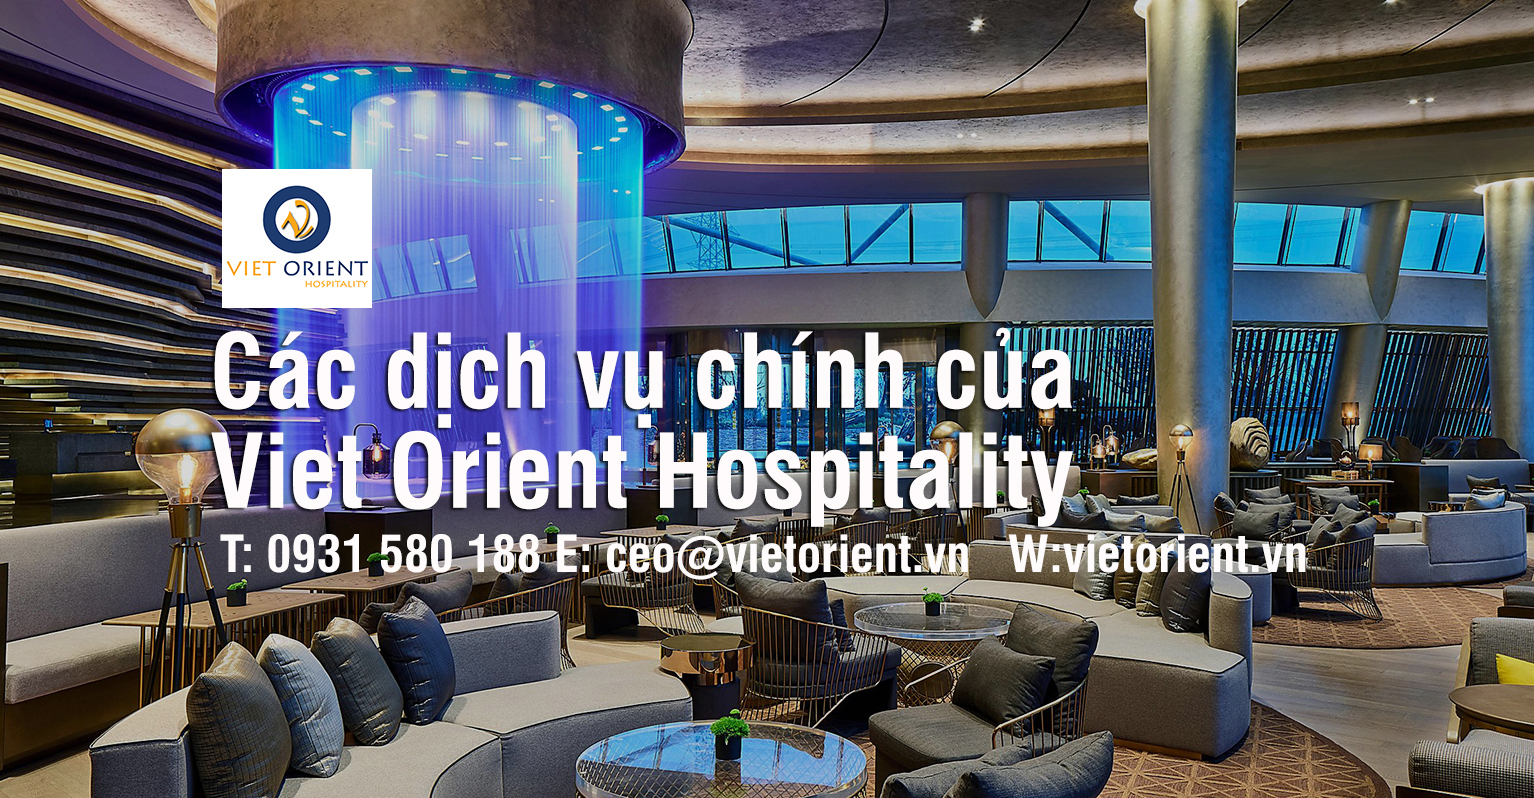 Các dịch vụ chính của Công ty Tư vấn set up & Quản lý khách sạn Viet Orient